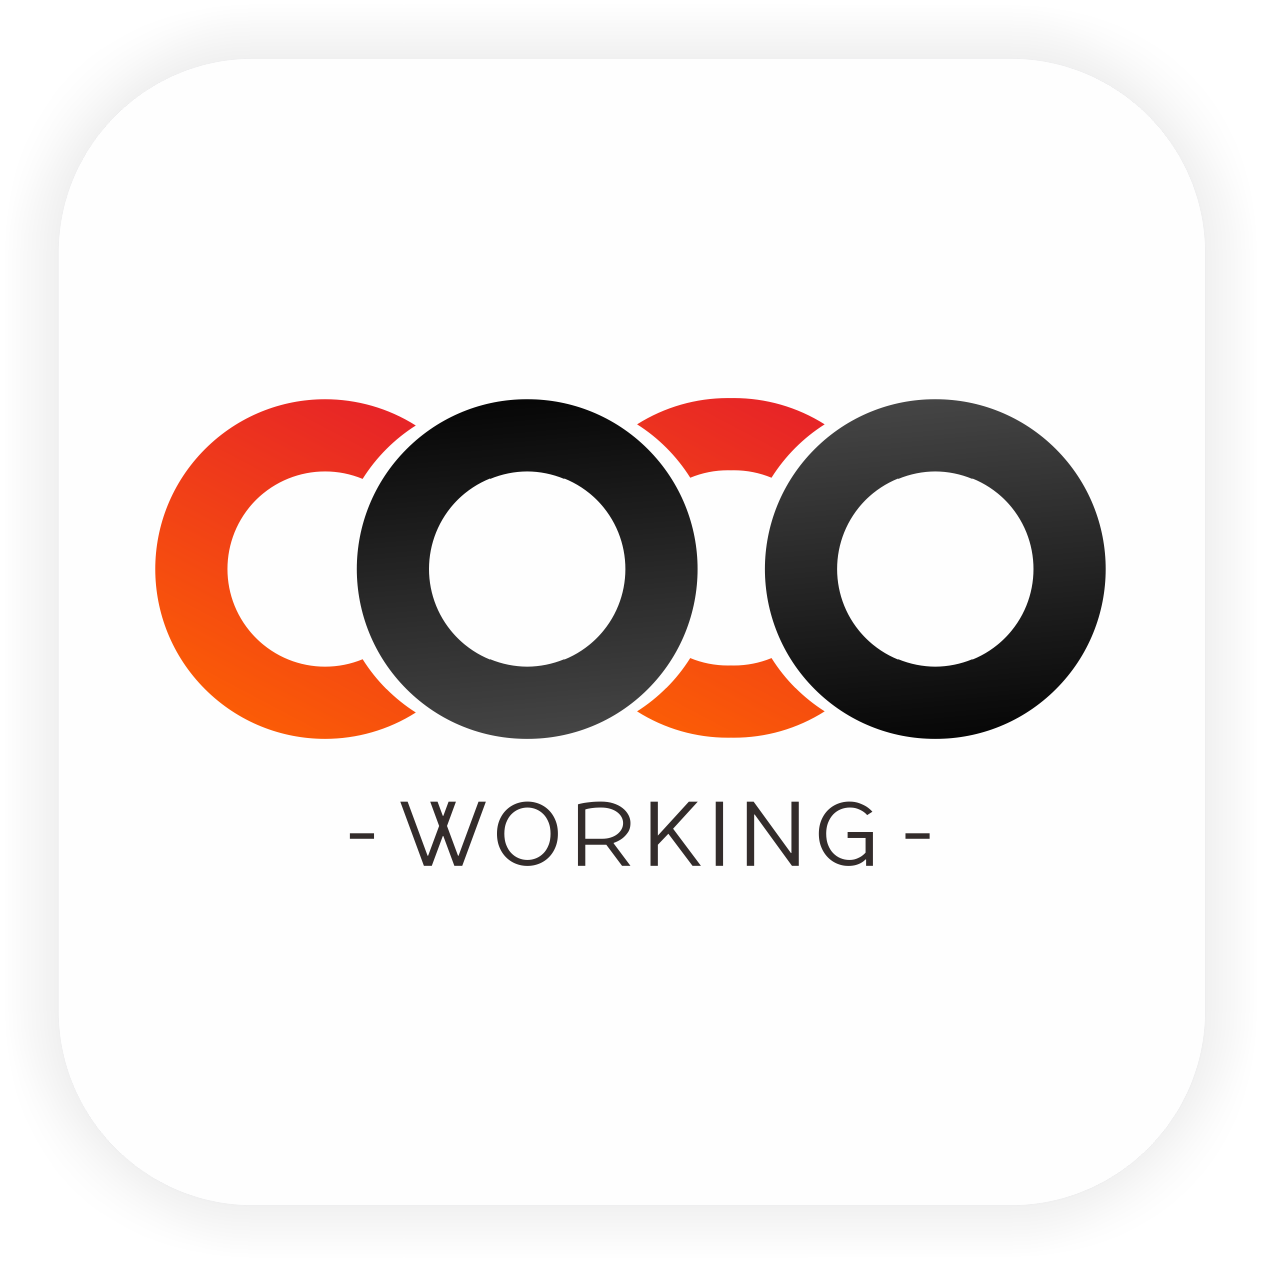 cocoworking_cocoworking小程序_cocoworking微信小程序